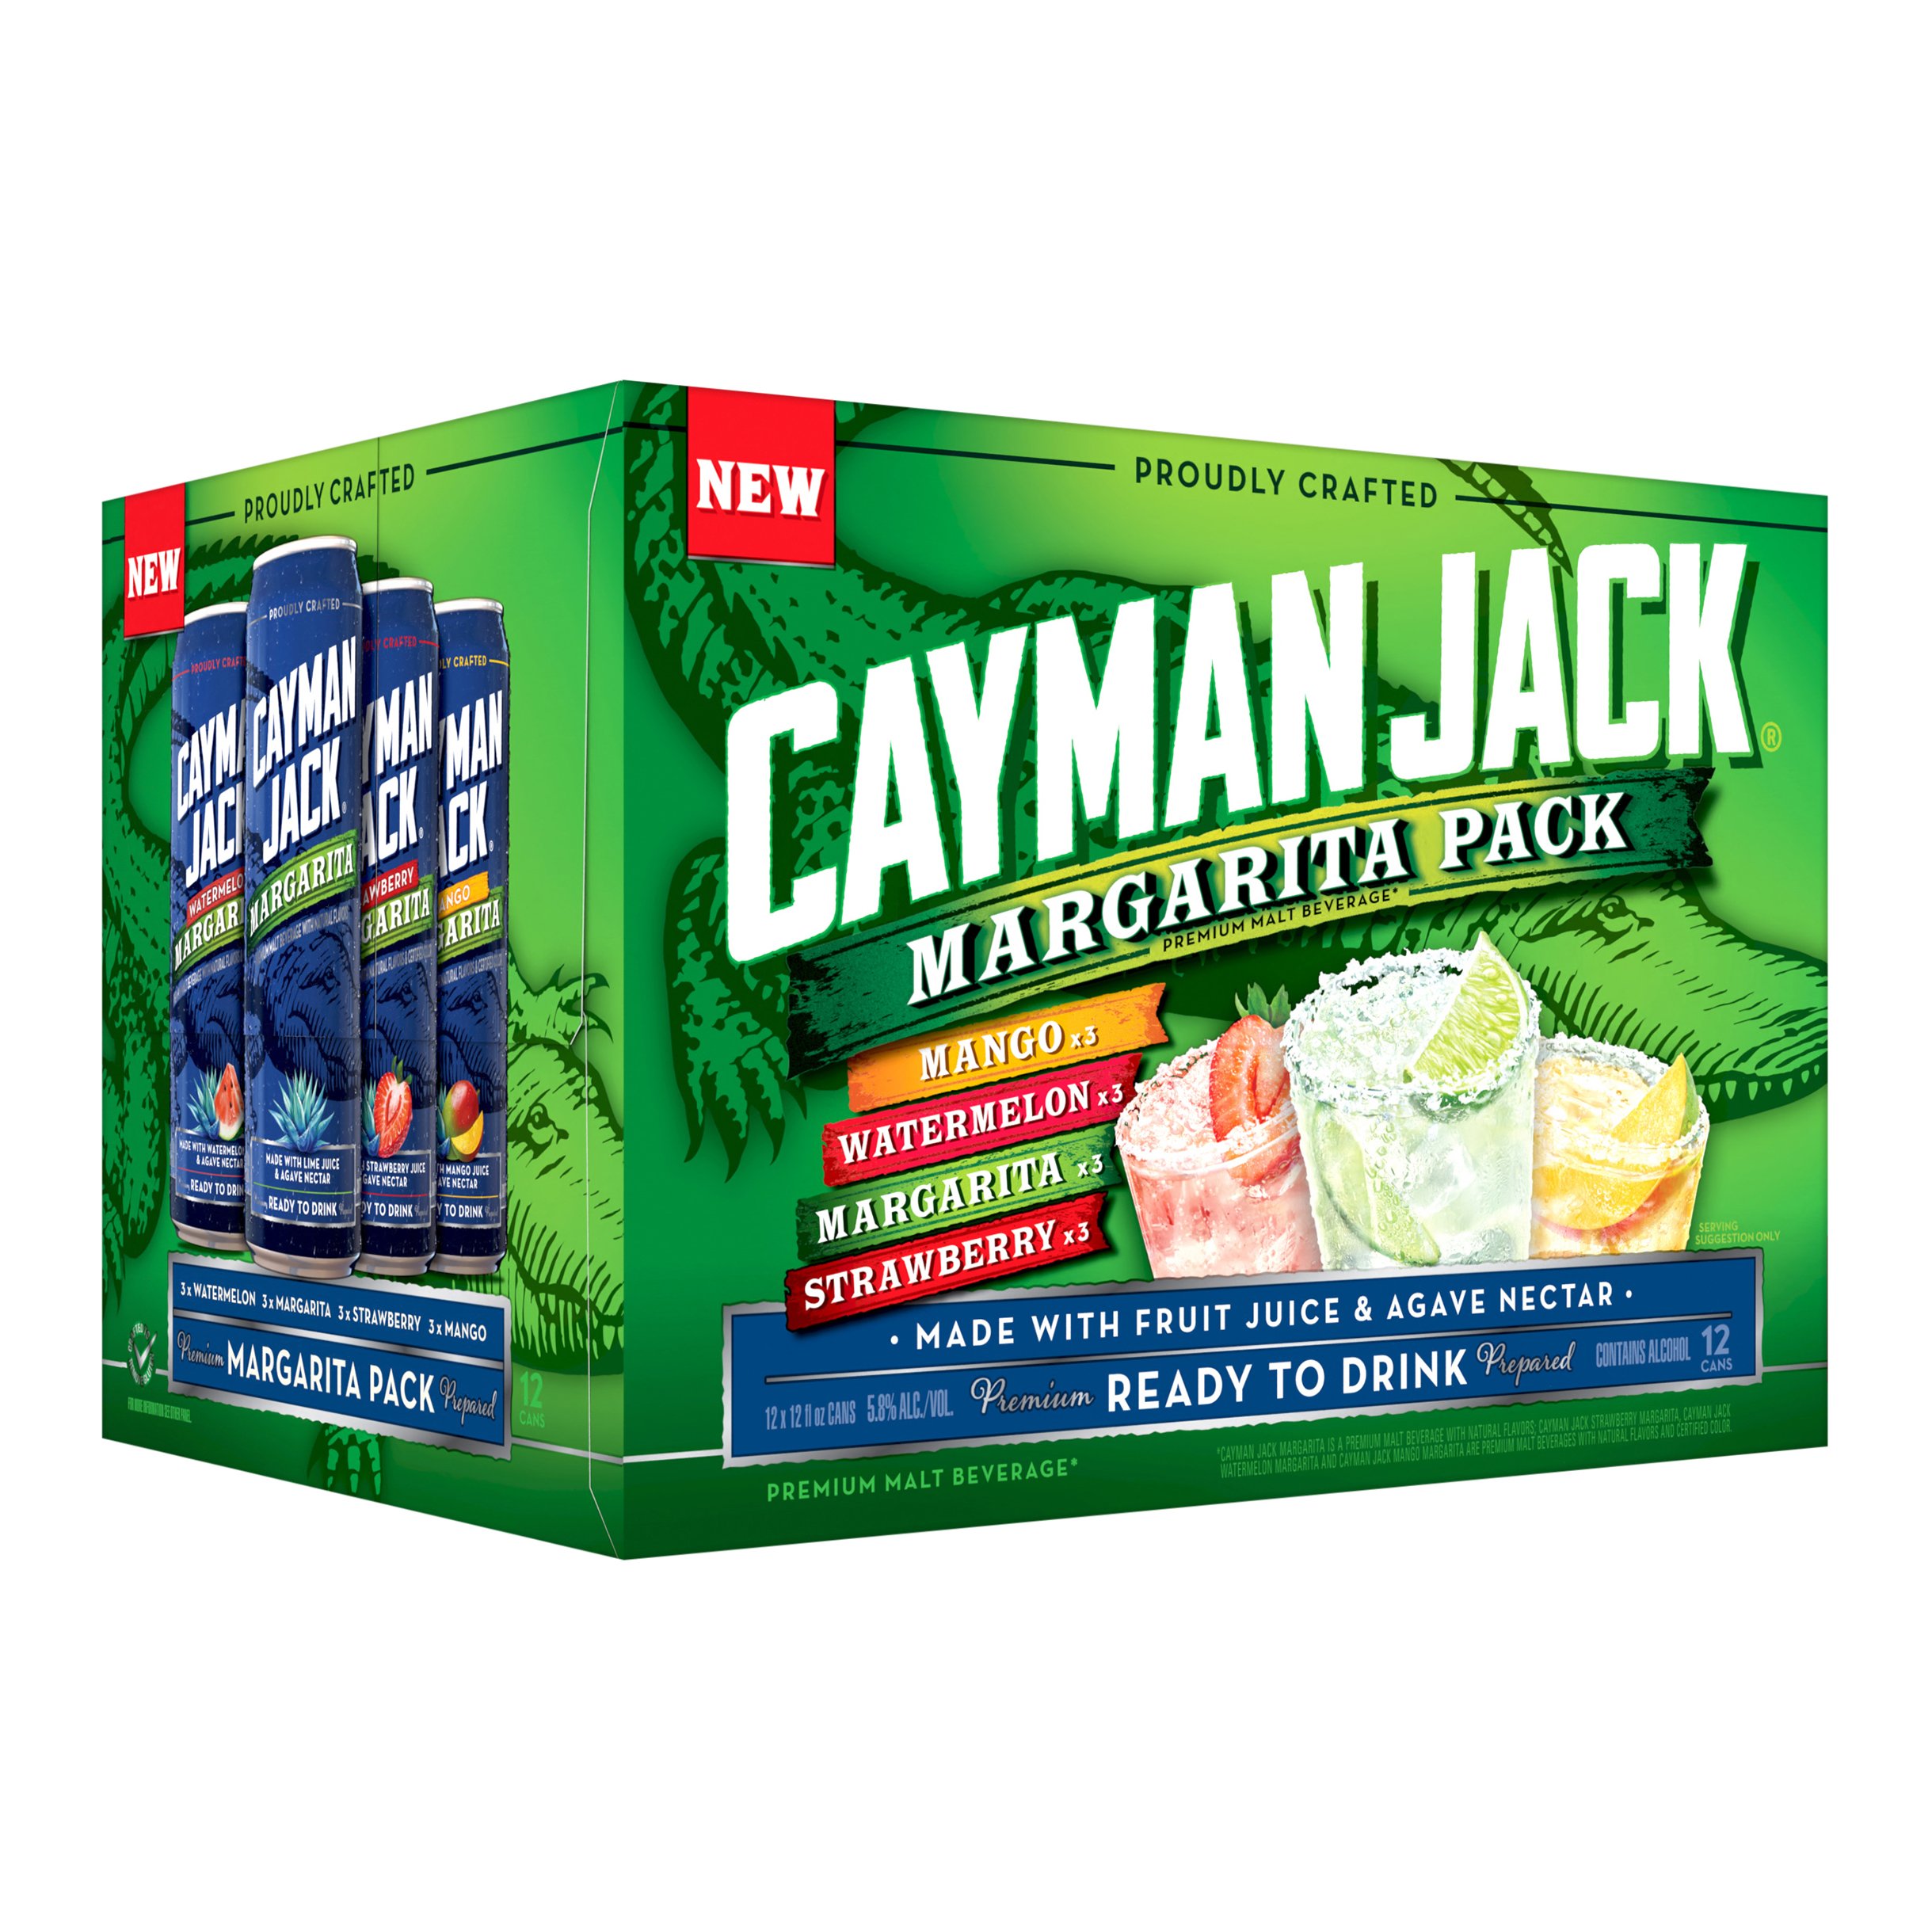 cayman-jack-margarita-pack-variety-12-oz-cans-shop-malt-beverages